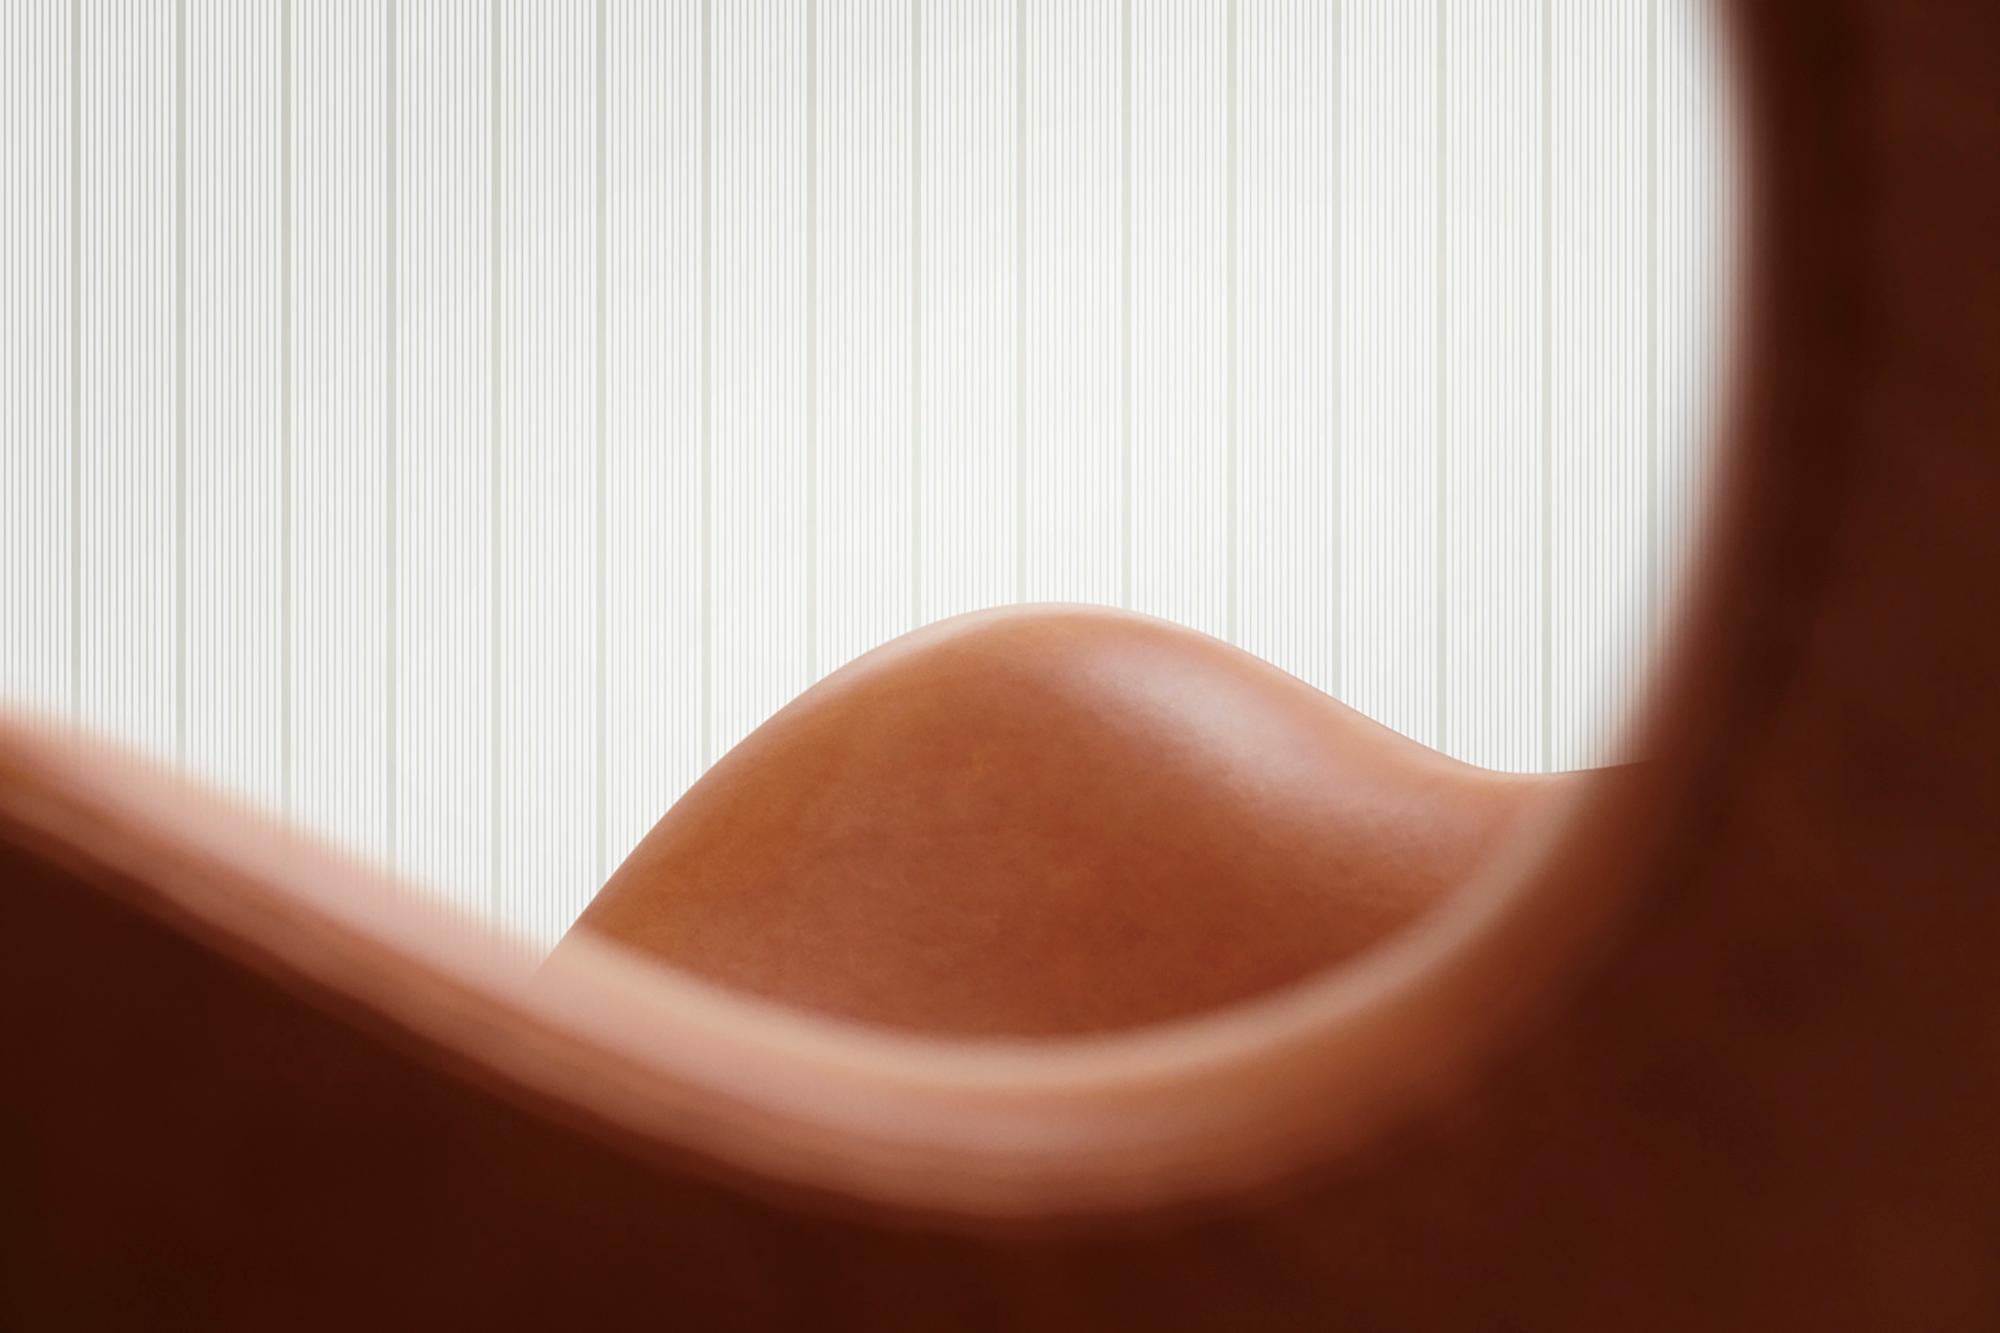 Arne Jacobsen 'Egg' Chair for Fritz Hansen in Leather Upholstery (Cat. 5) For Sale 1